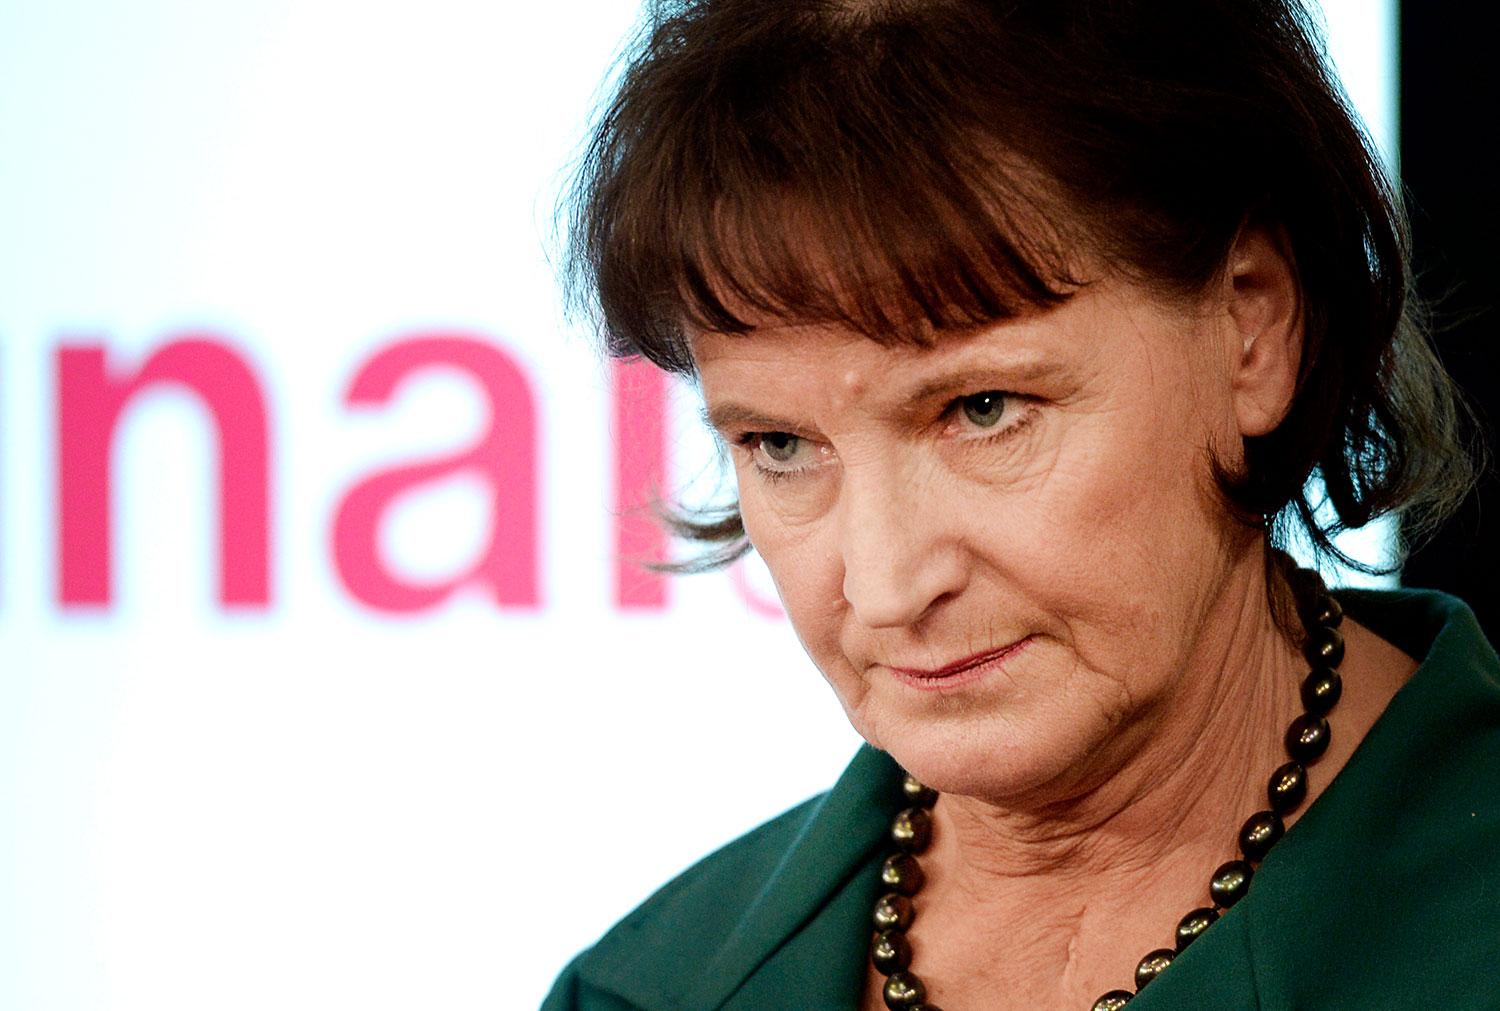 Kommunals förre ordförande Annelie Nordström.